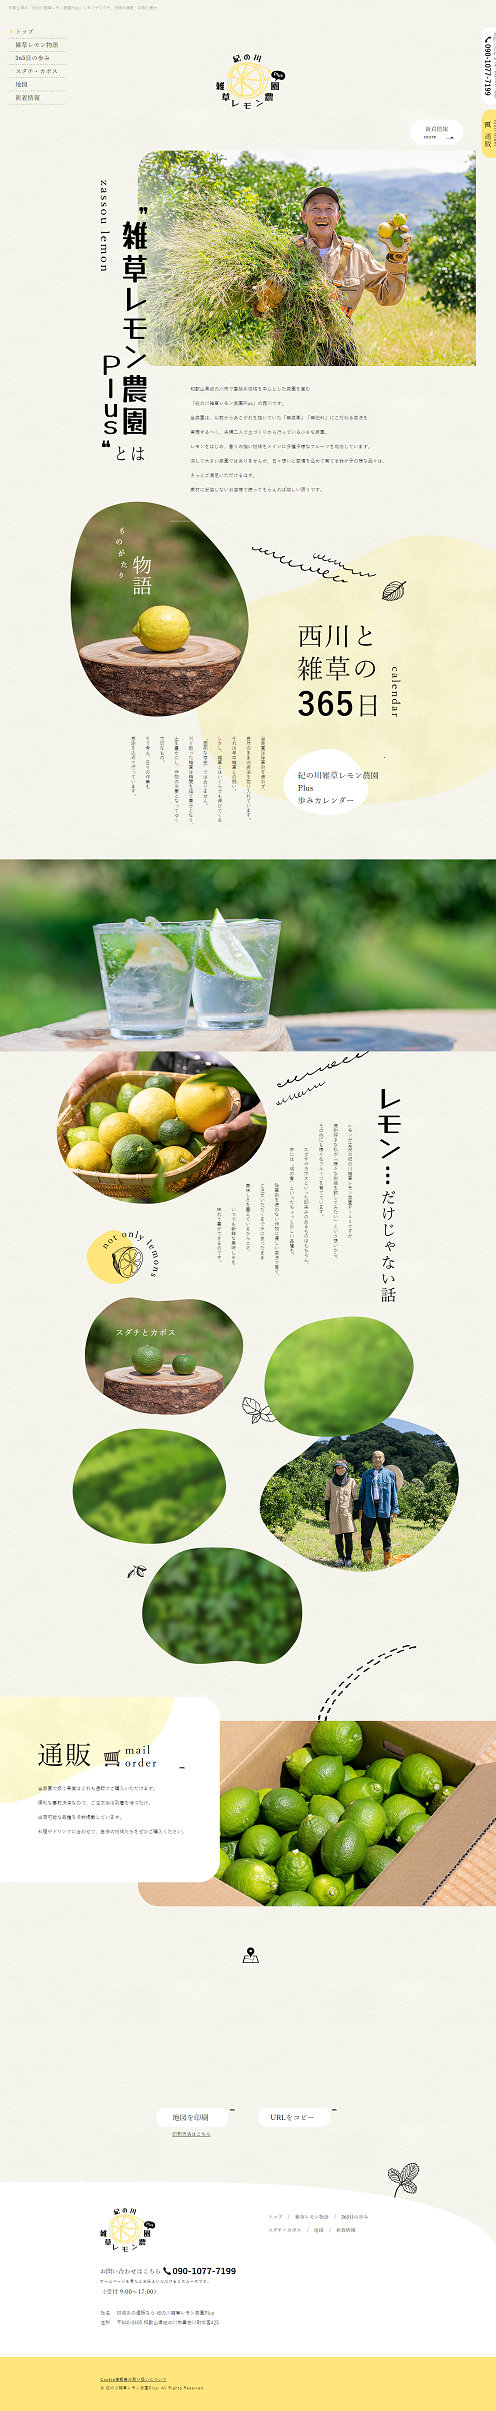 紀の川雑草レモン農園Plus